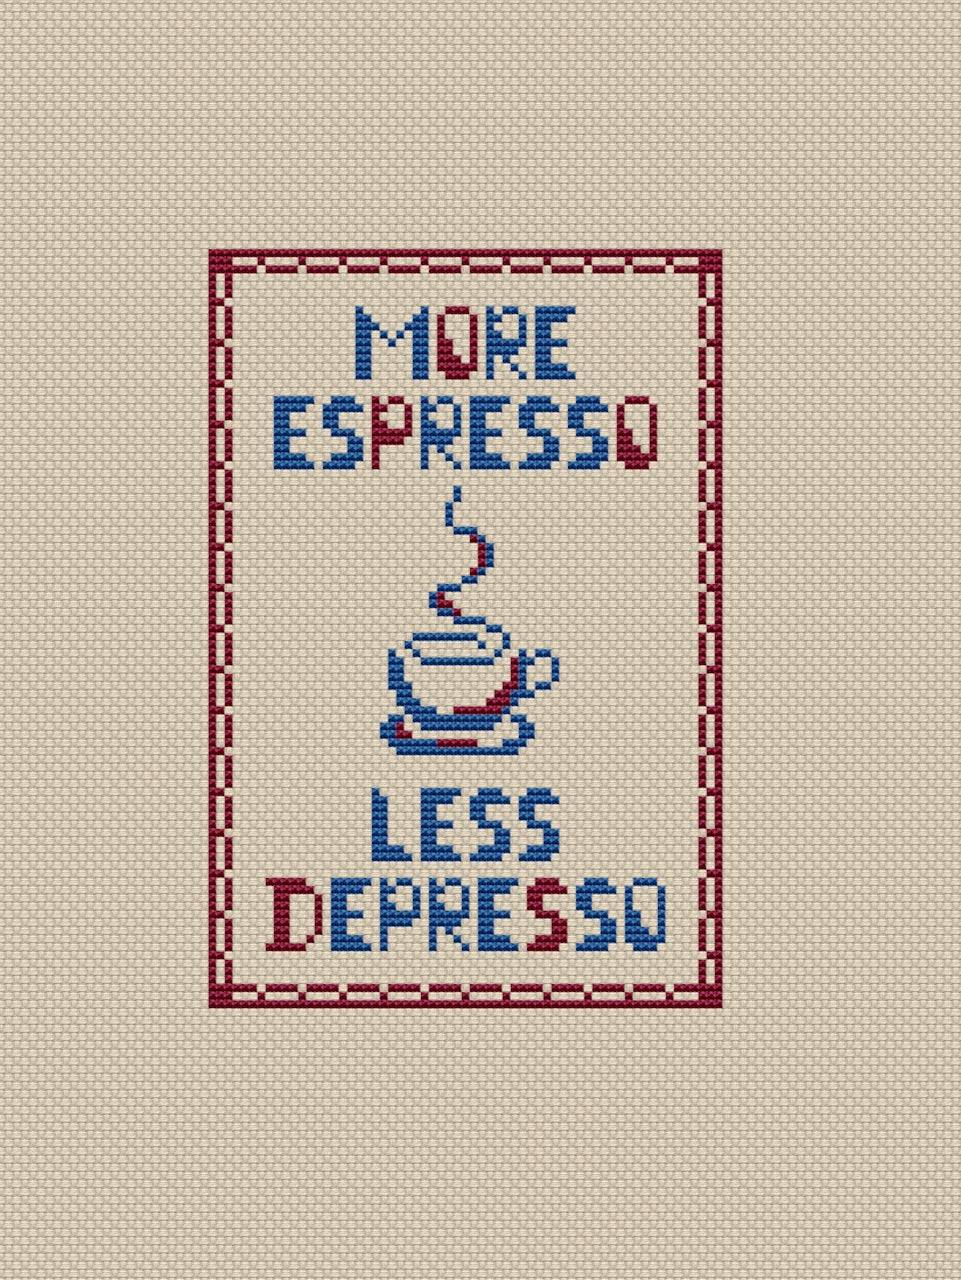 More espresso less depresso cross stitch